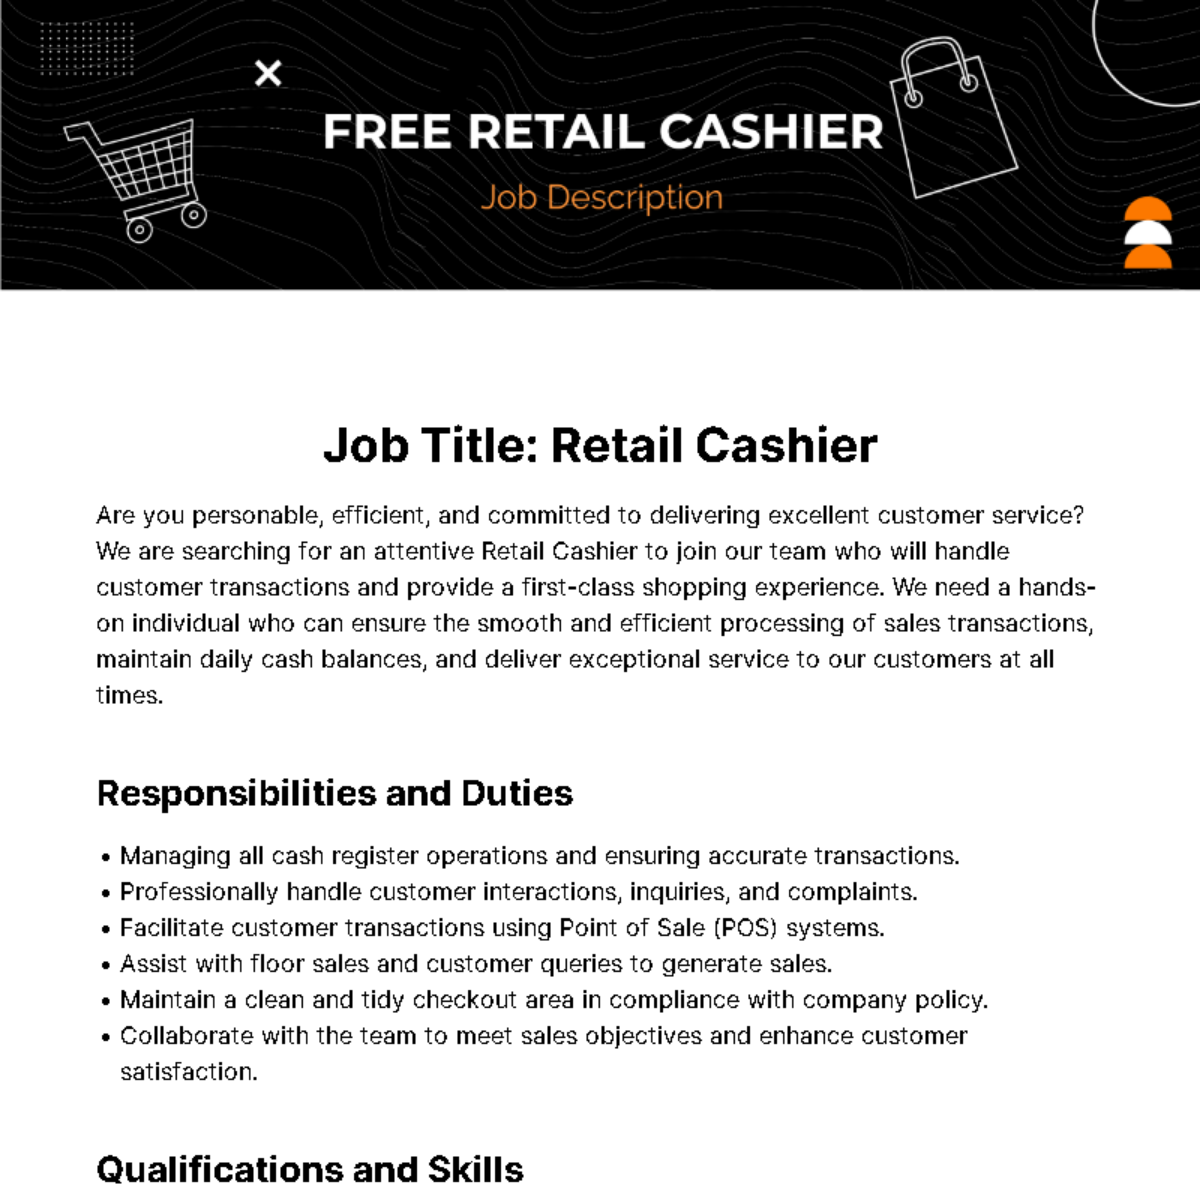 Free Retail Cashier Job Description Template